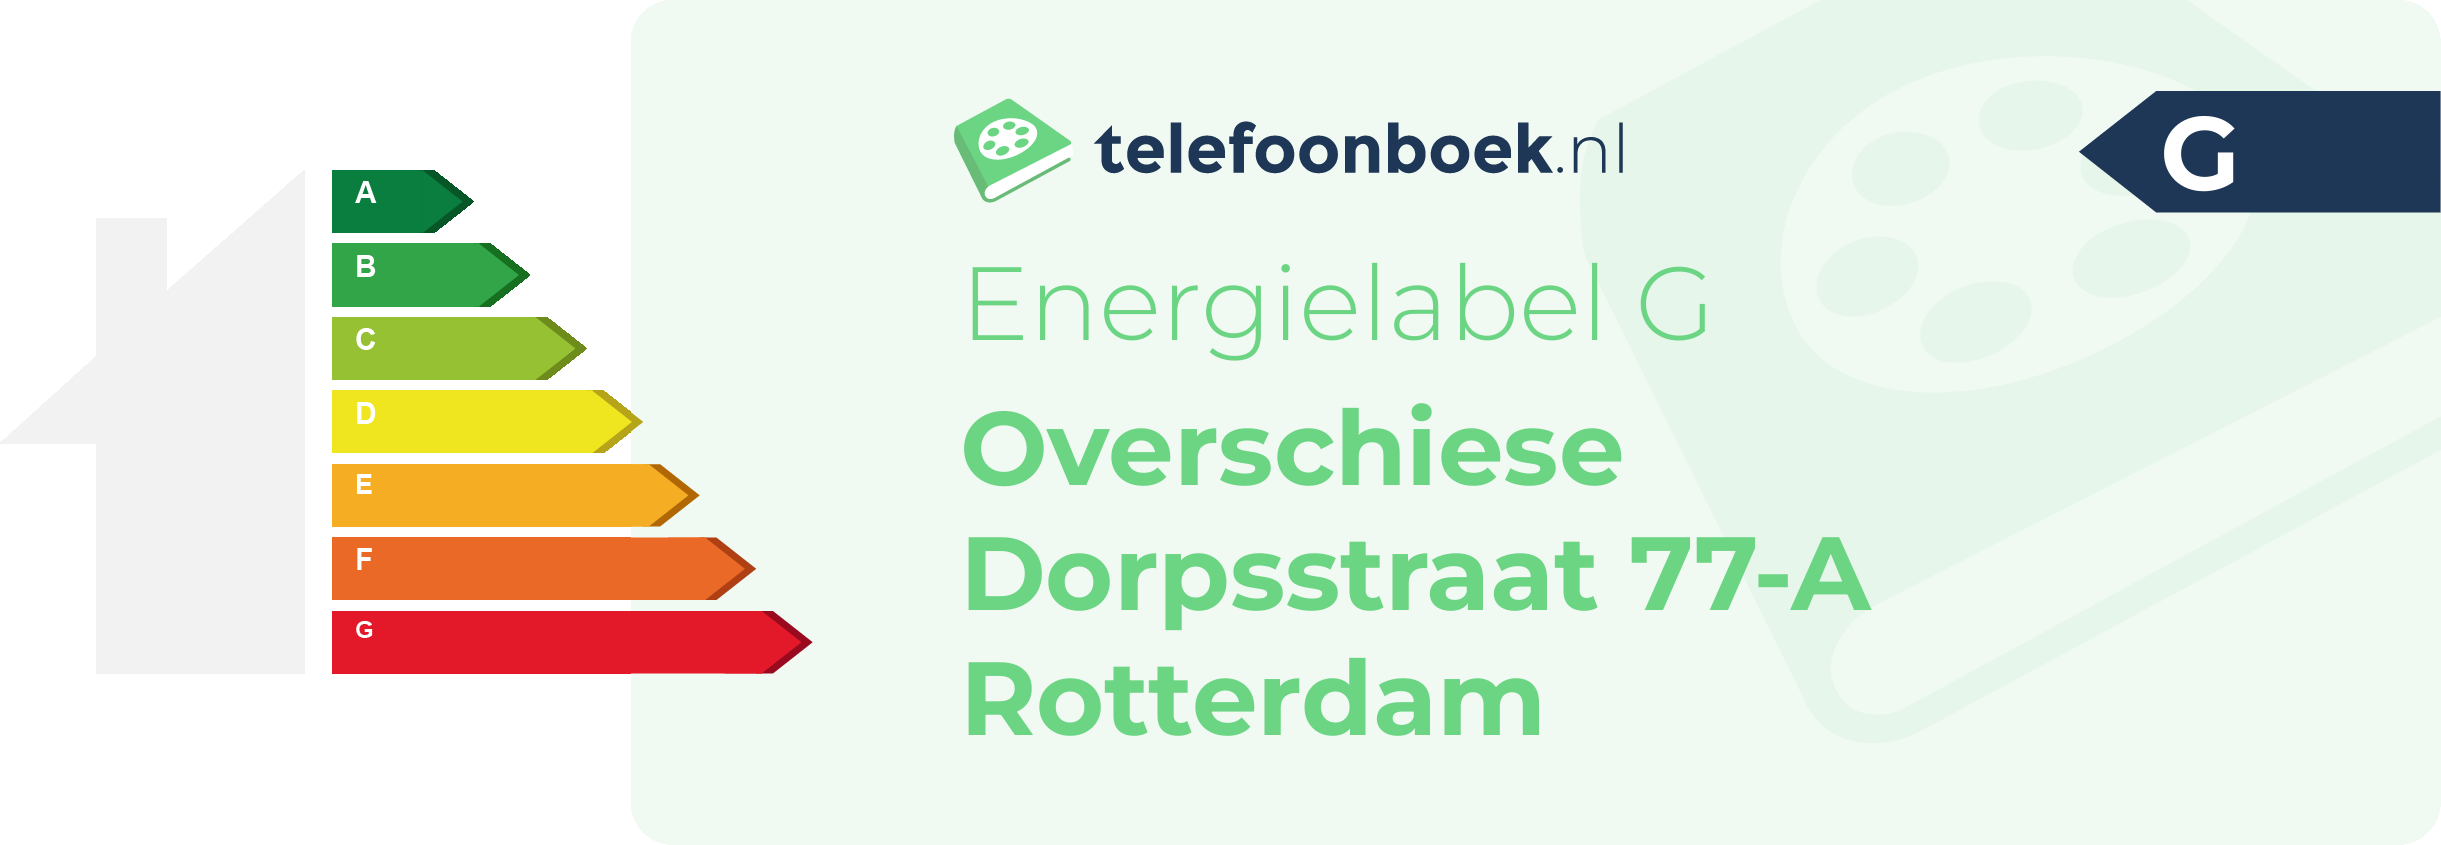 Energielabel Overschiese Dorpsstraat 77-A Rotterdam